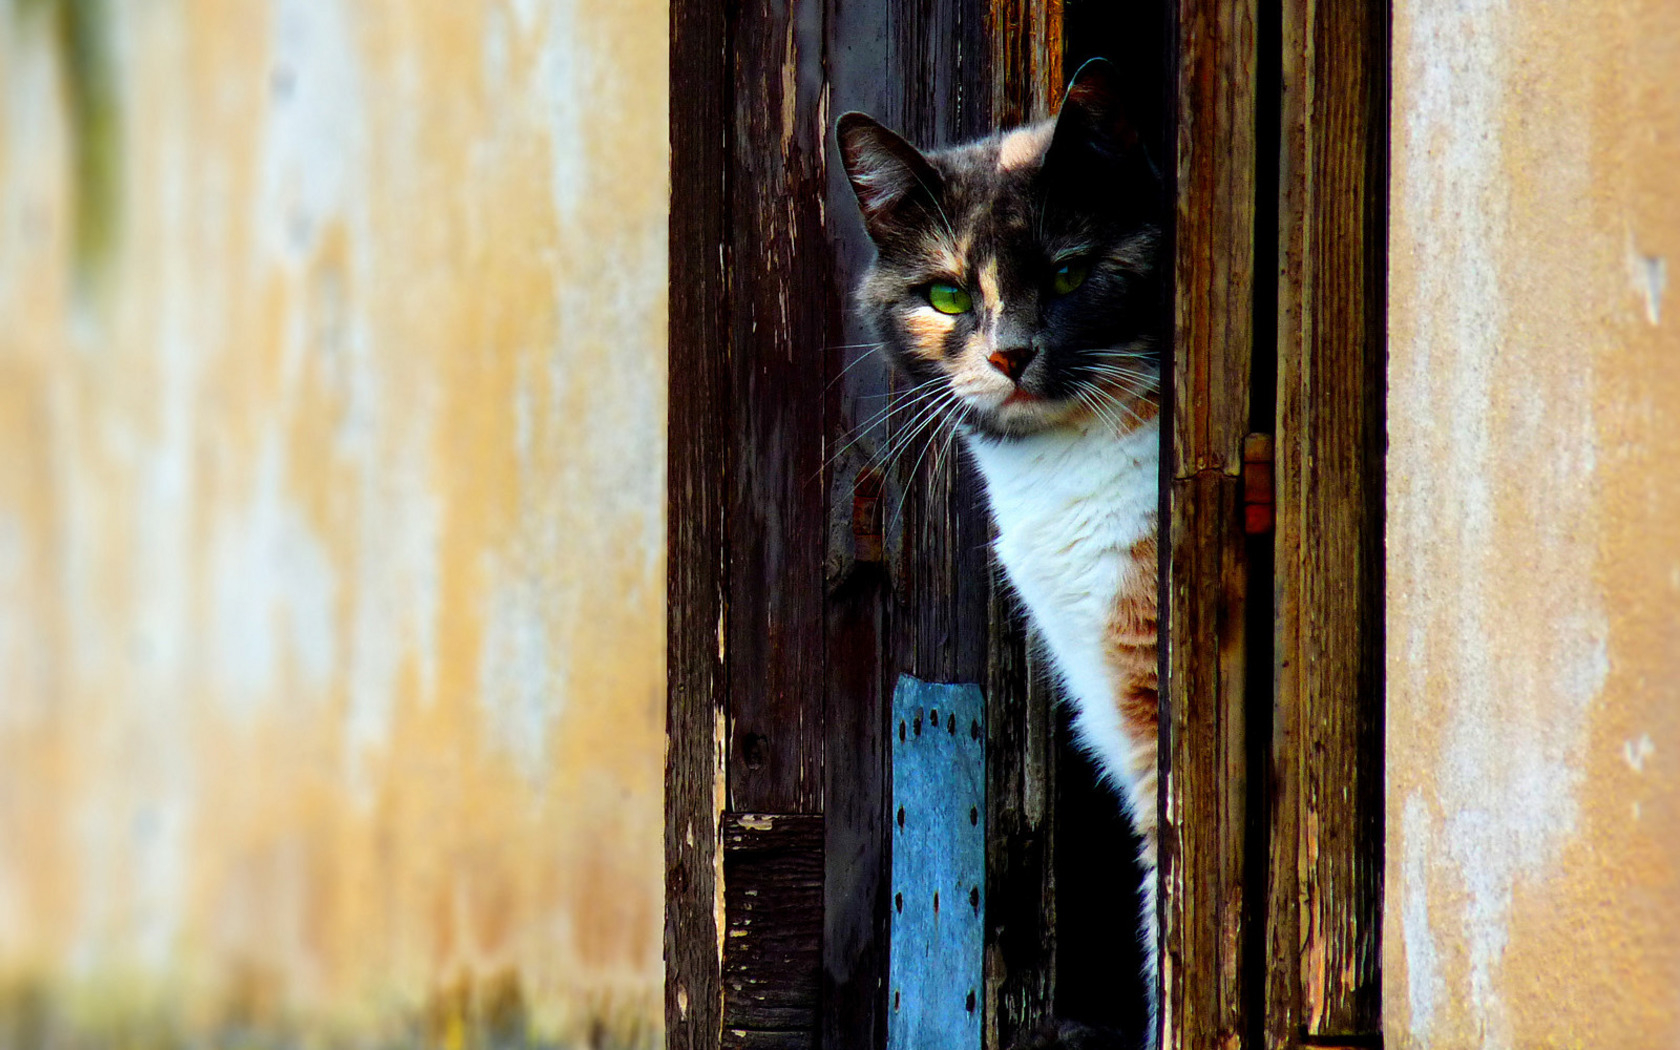 Чужая кошка пришла в ваш дом: приметы и суеверия | Слов`янські відомості